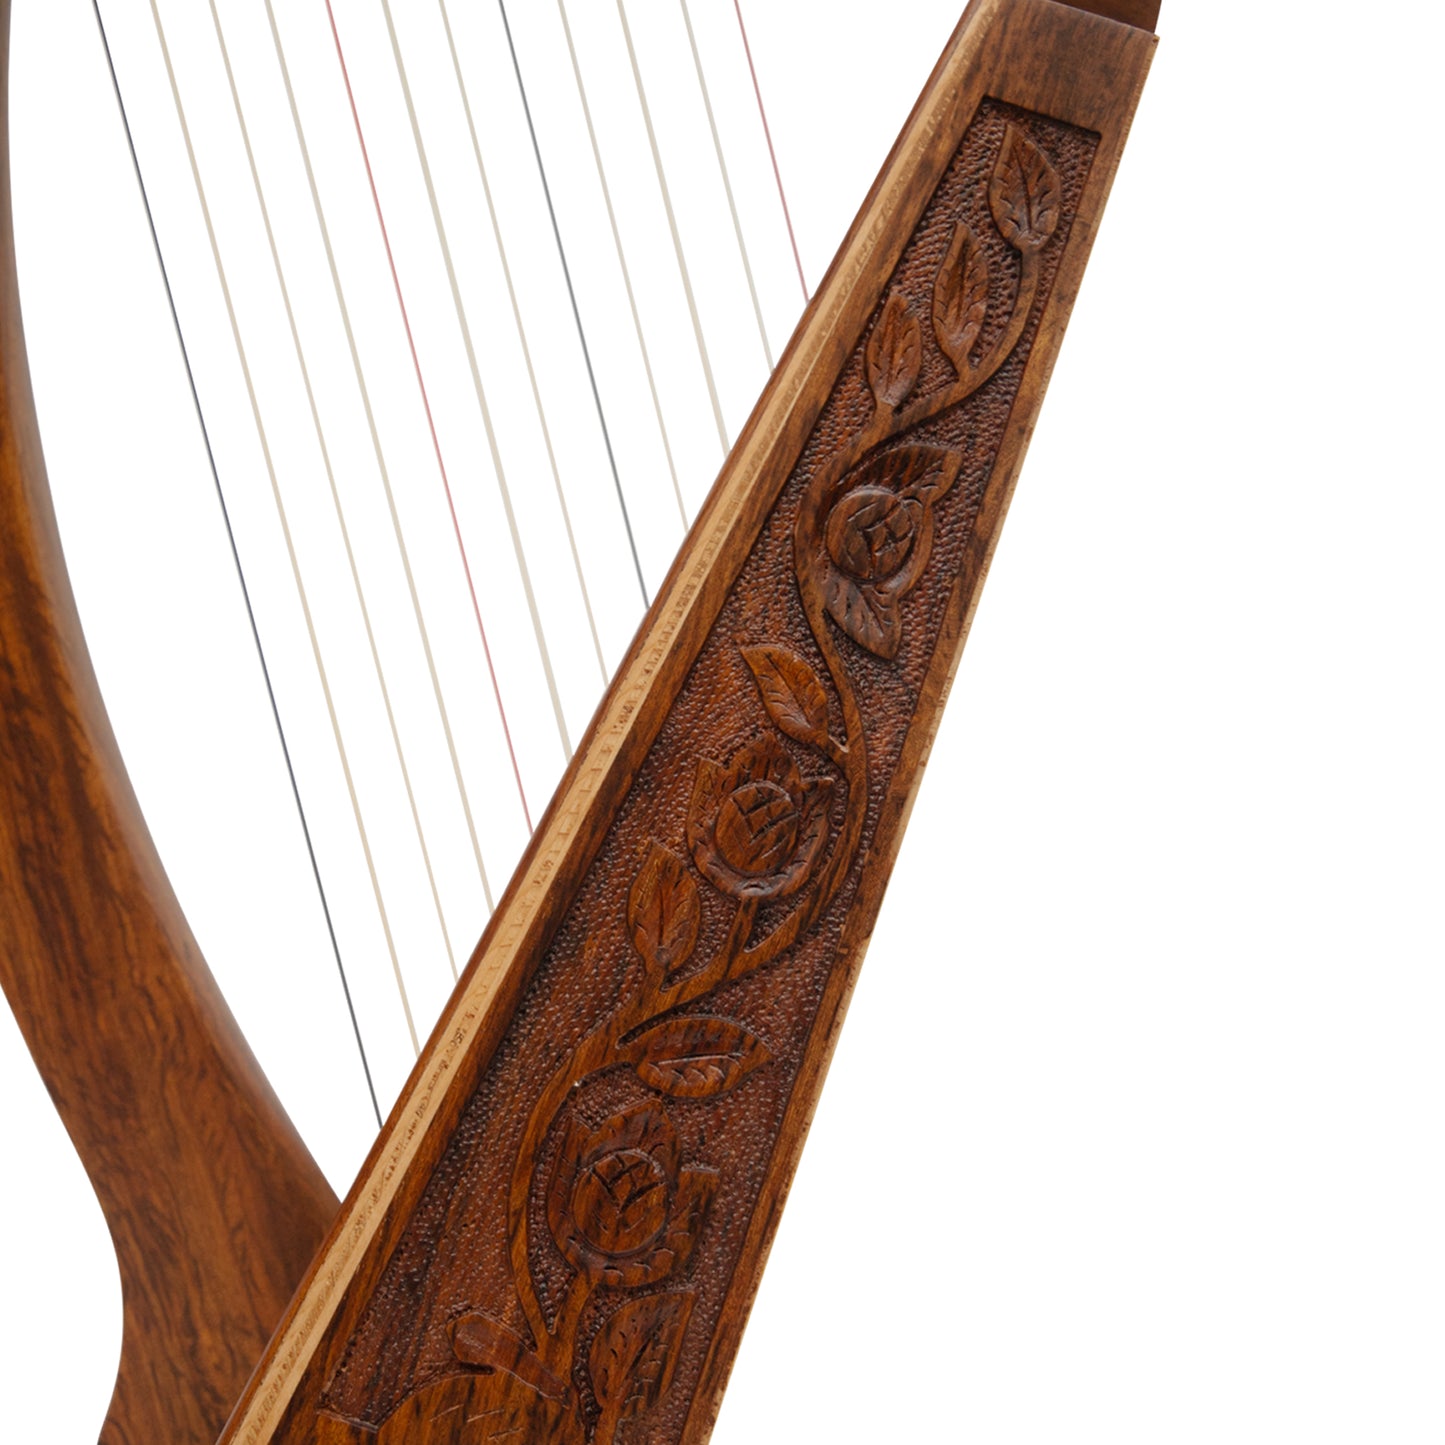 O'Carolan Harp 12 String Rosewood